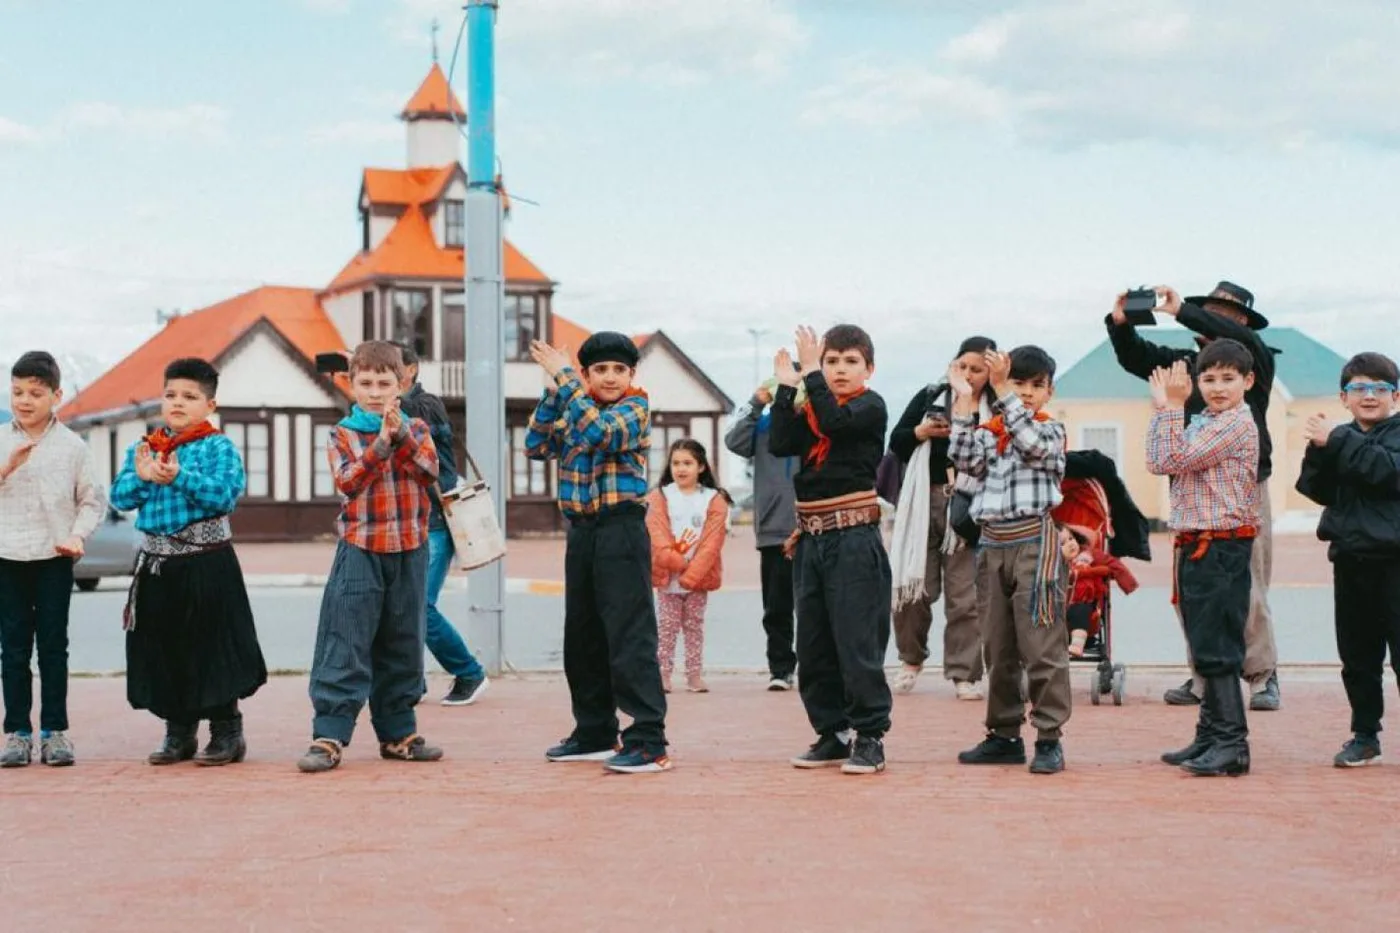 Municipio de Ushuaia celebró el Día de la Tradición junto a vecinos